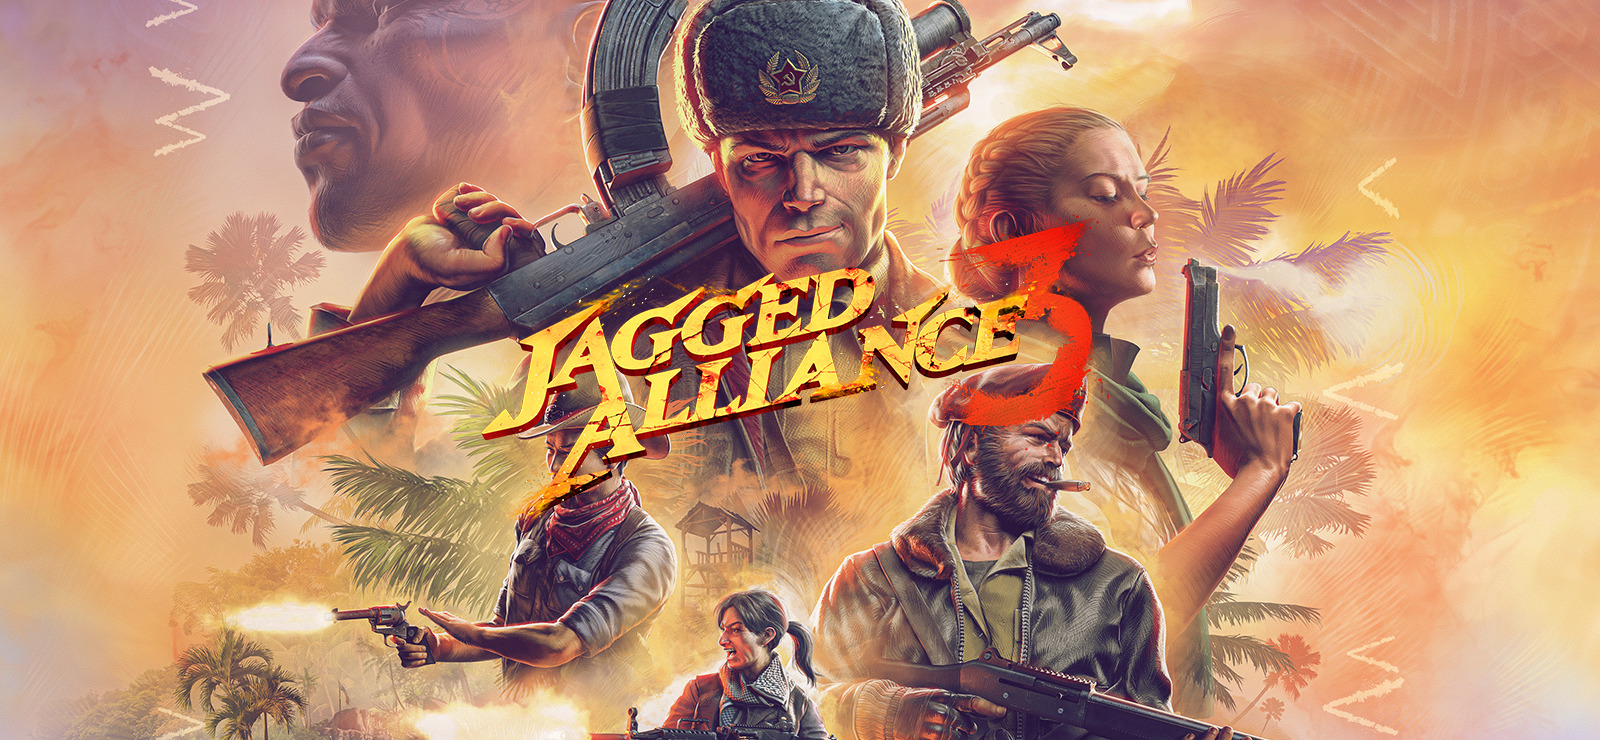 Jagged Alliance 3, bezpośrednia kontynuacja strategii RPG Jagged Alliance z lat 90-tych, jest już dostępna na Steamie